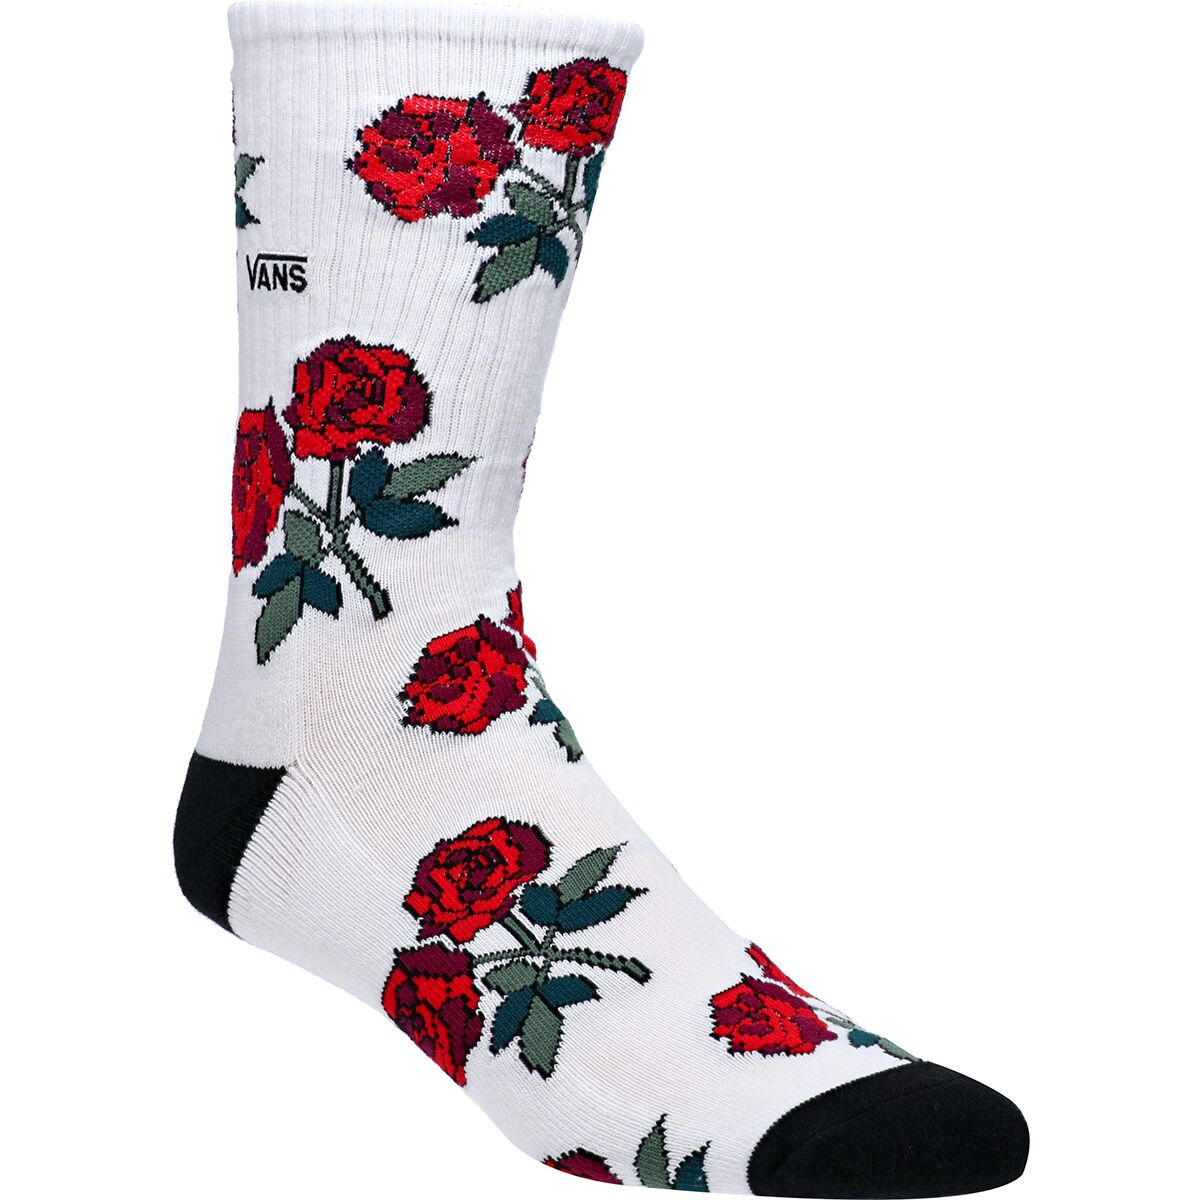 Vans Red Rose Crew Sock